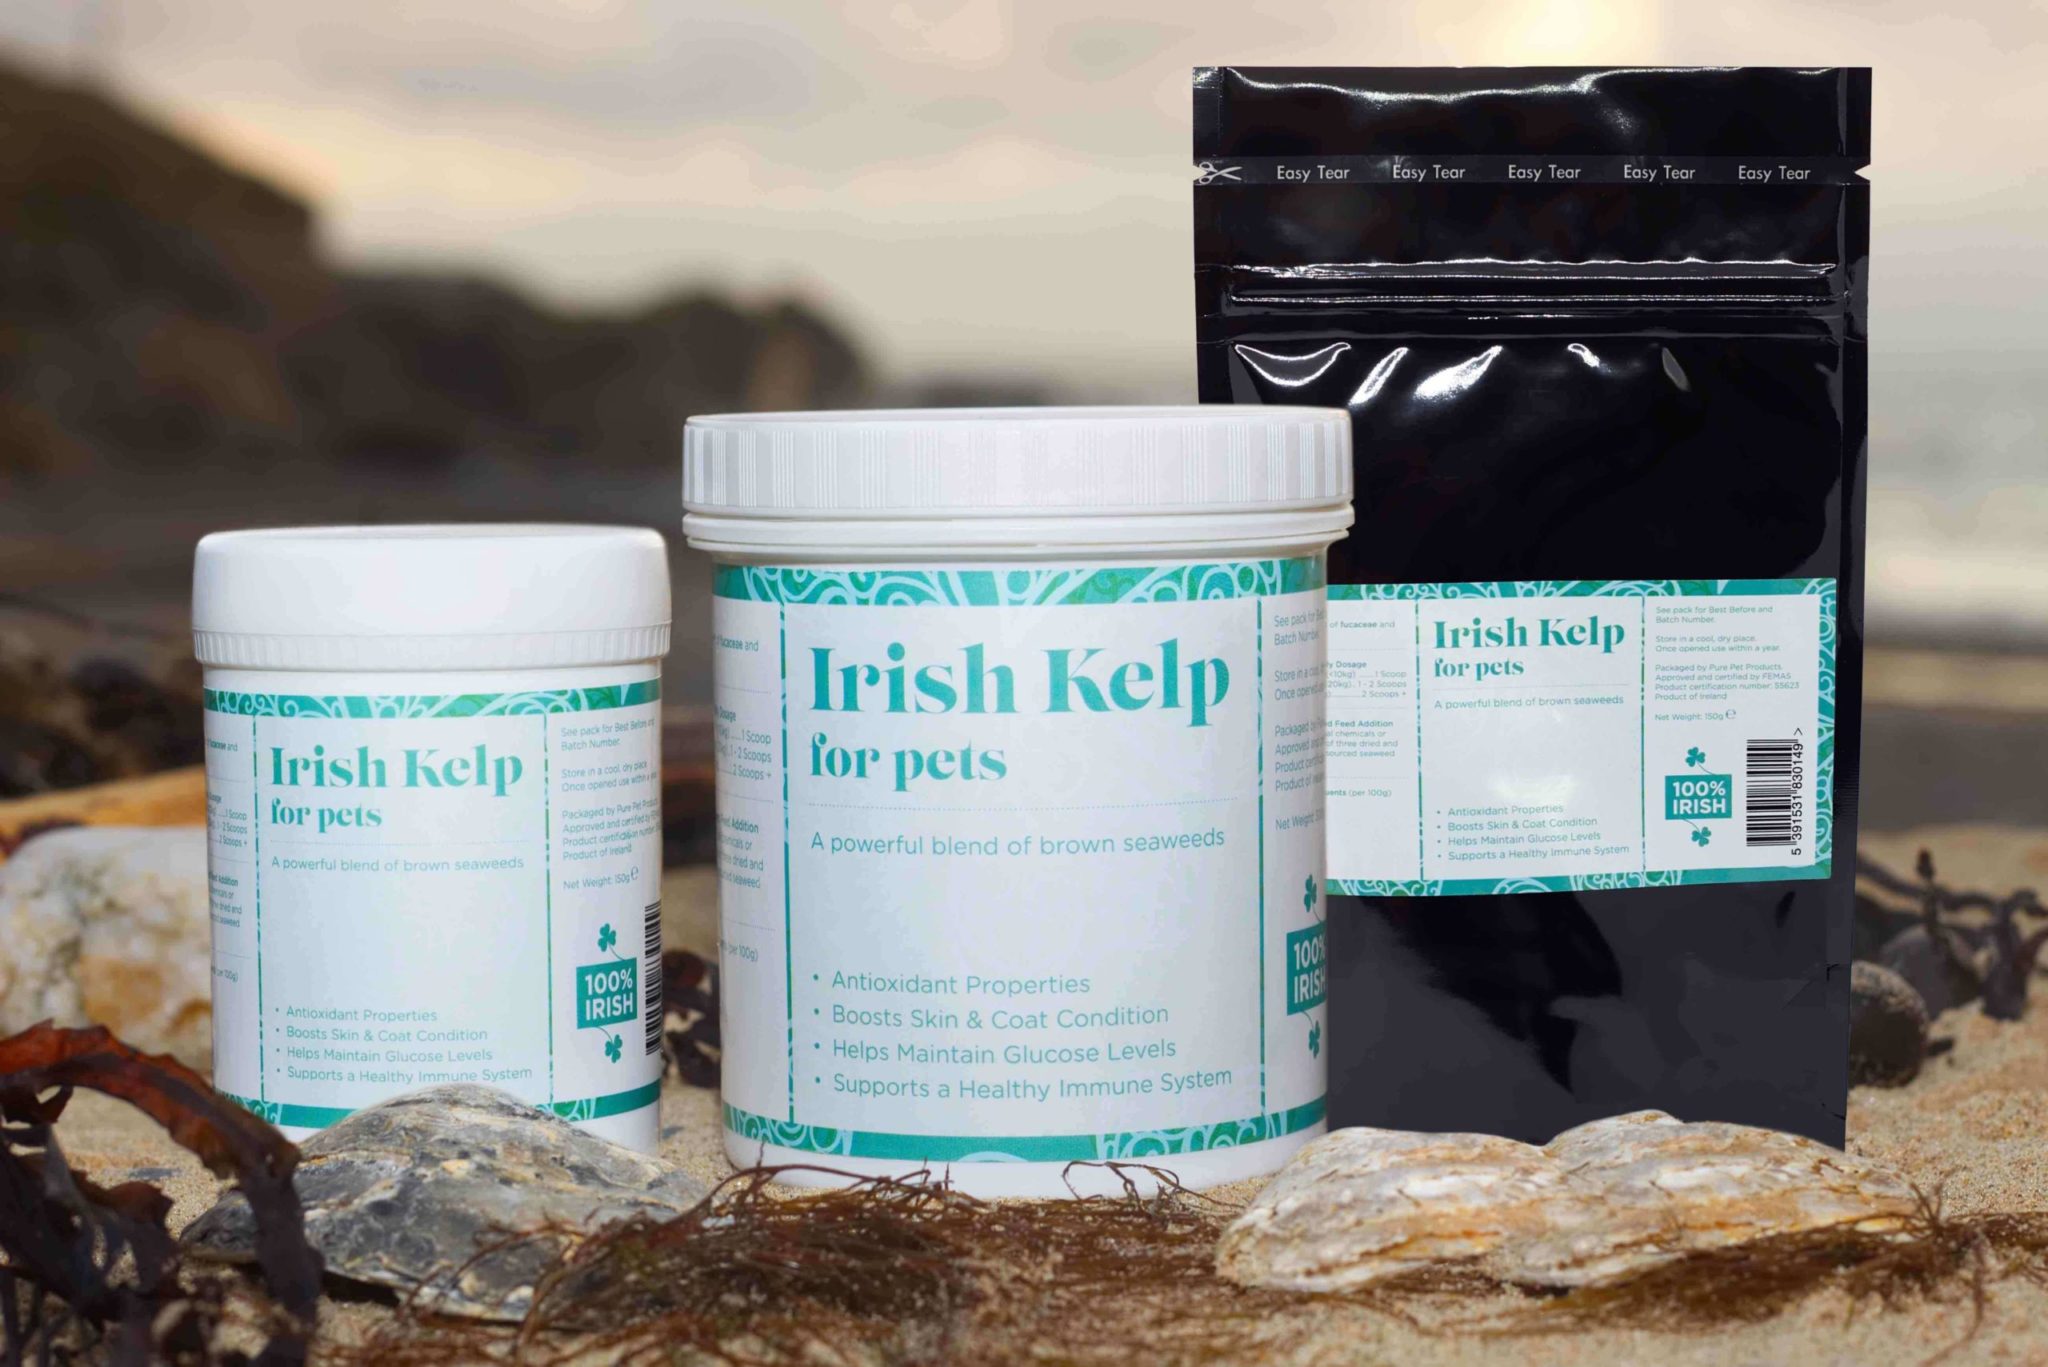 Irish kelp for dogs